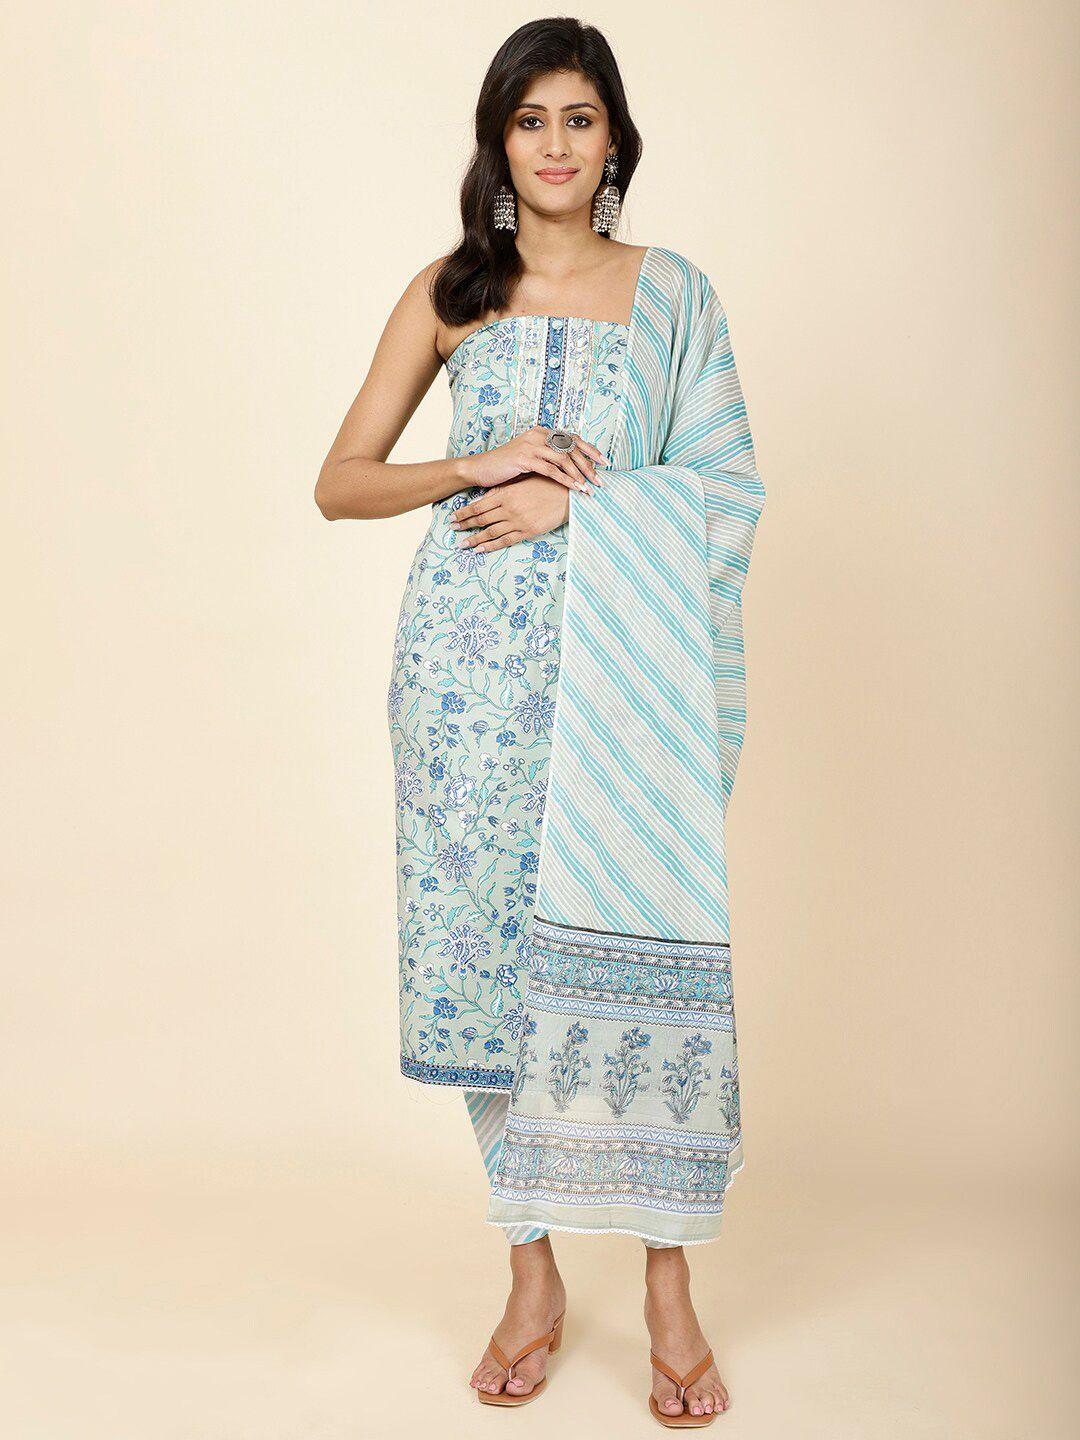 meena bazaar ethnic motifs printed gotta patti unstitched dress material